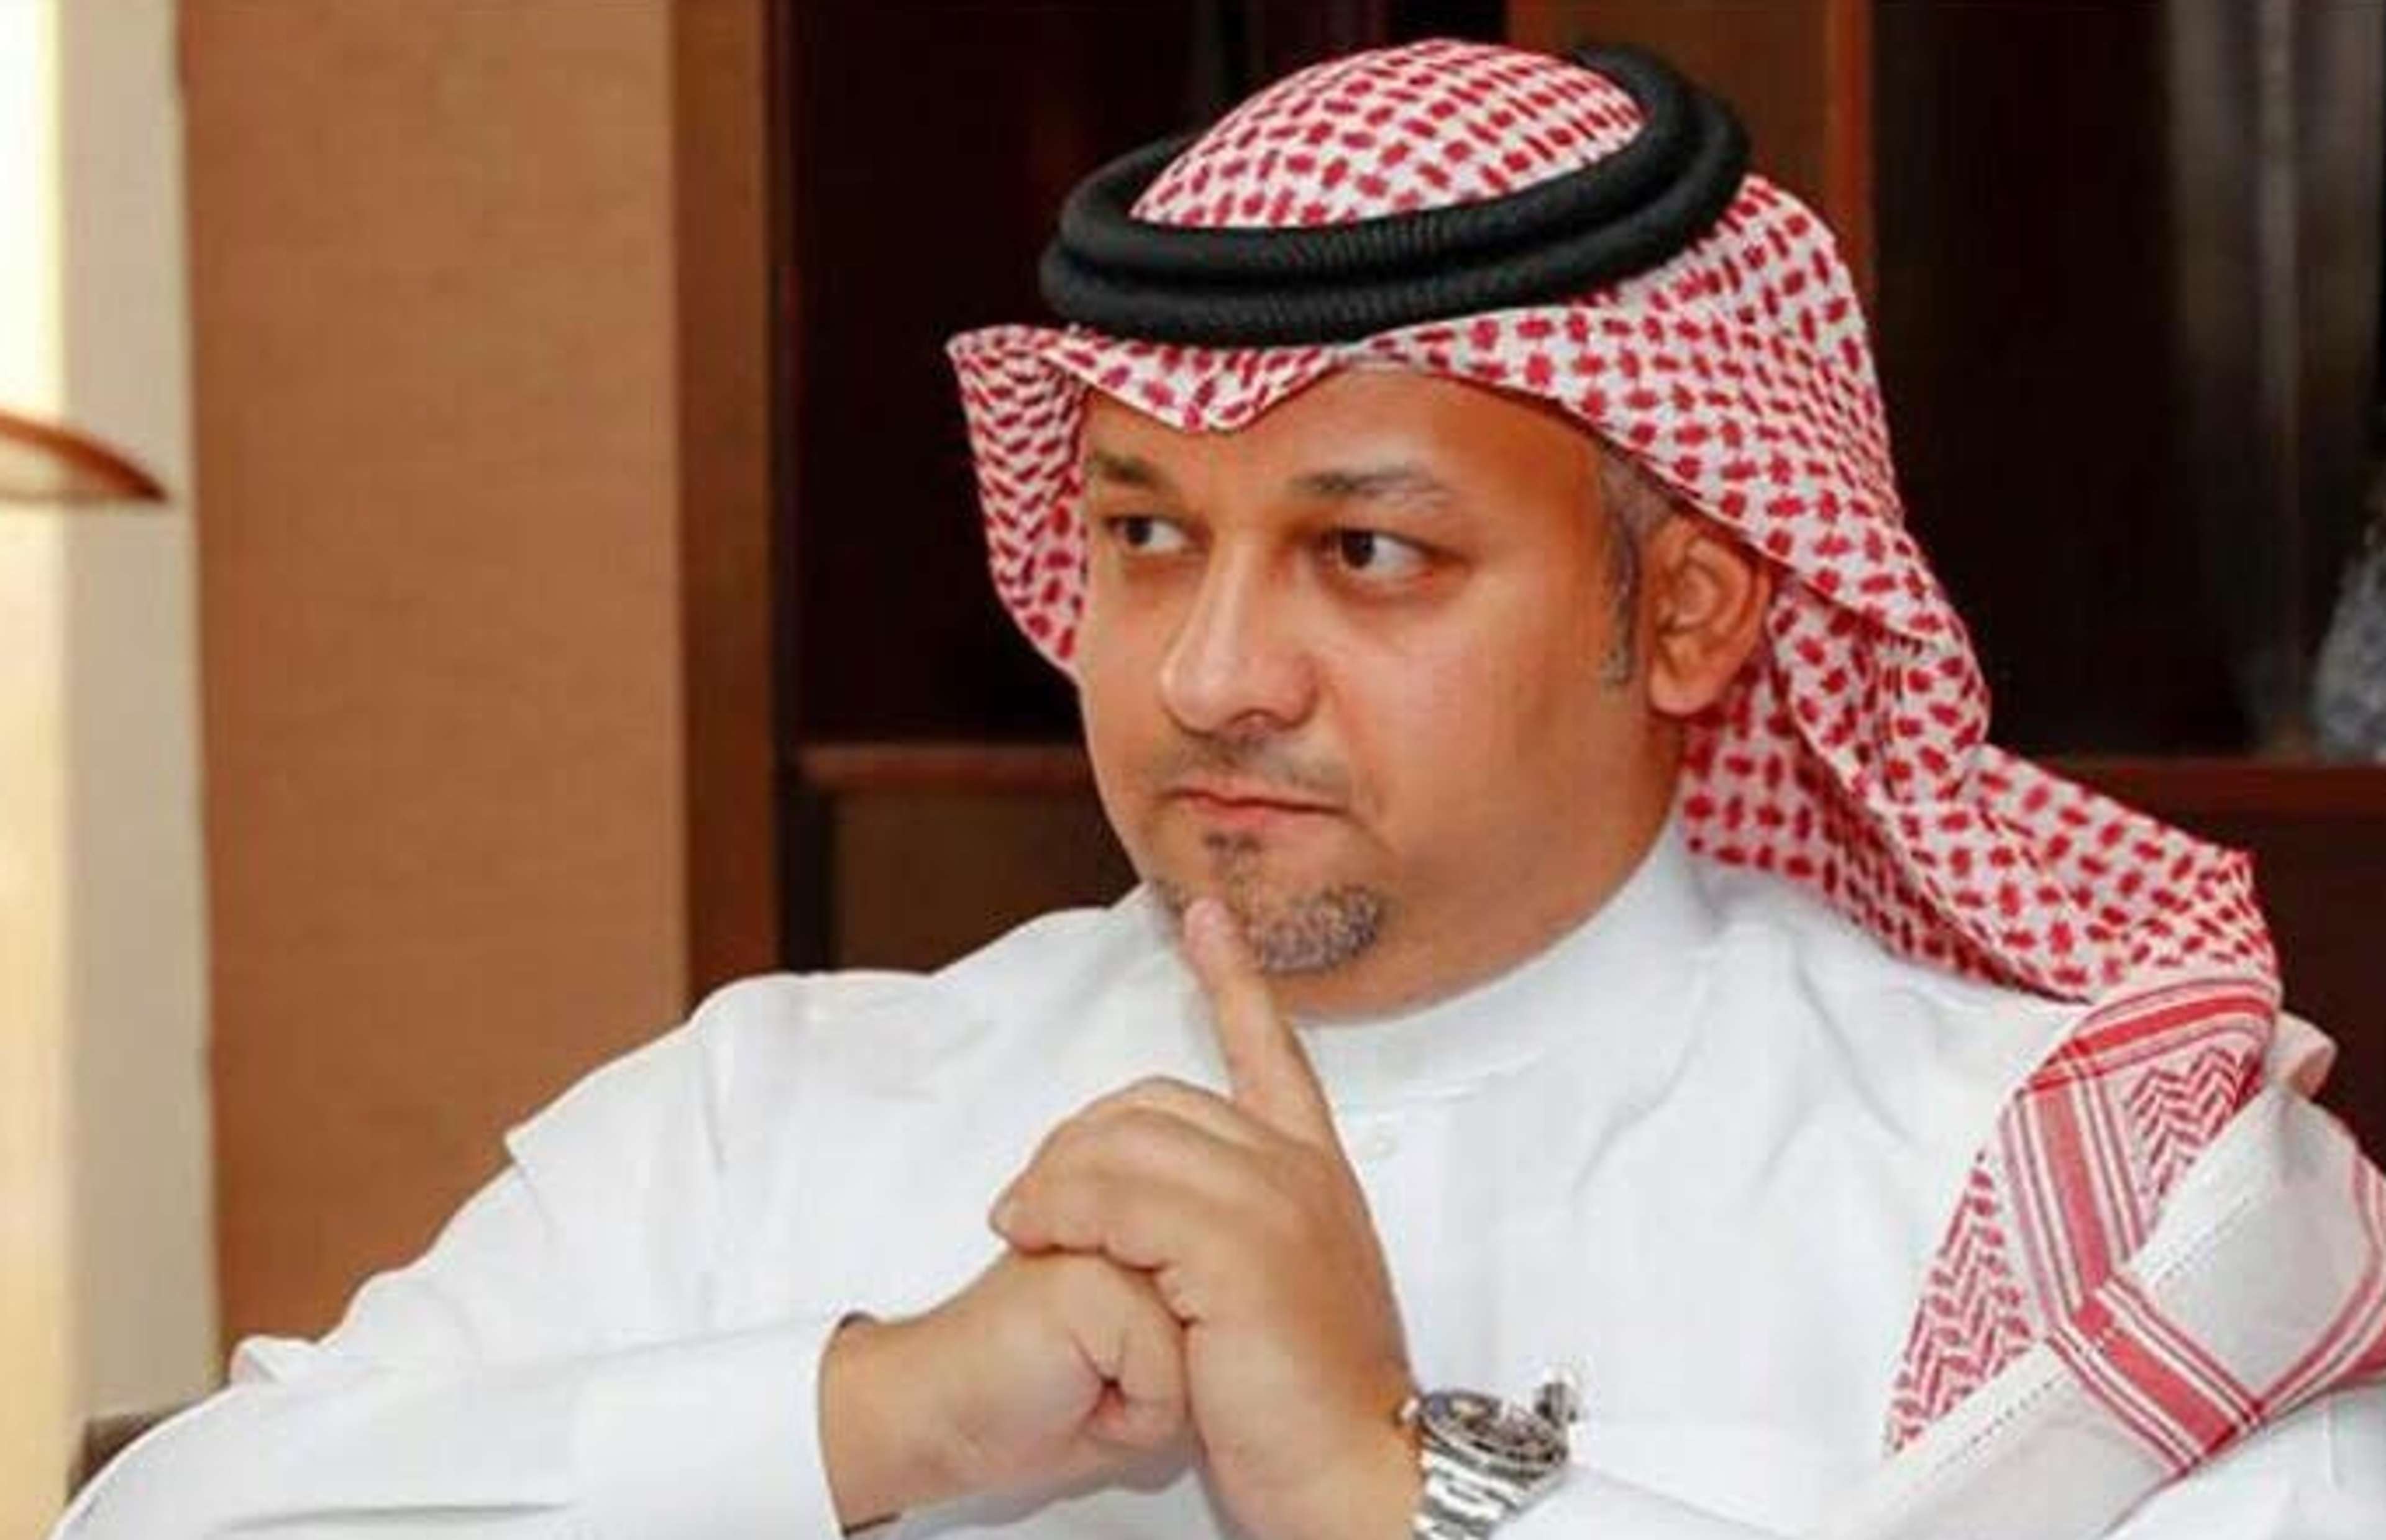 عادل عزت رئيس اتحاد الكرة السعودي